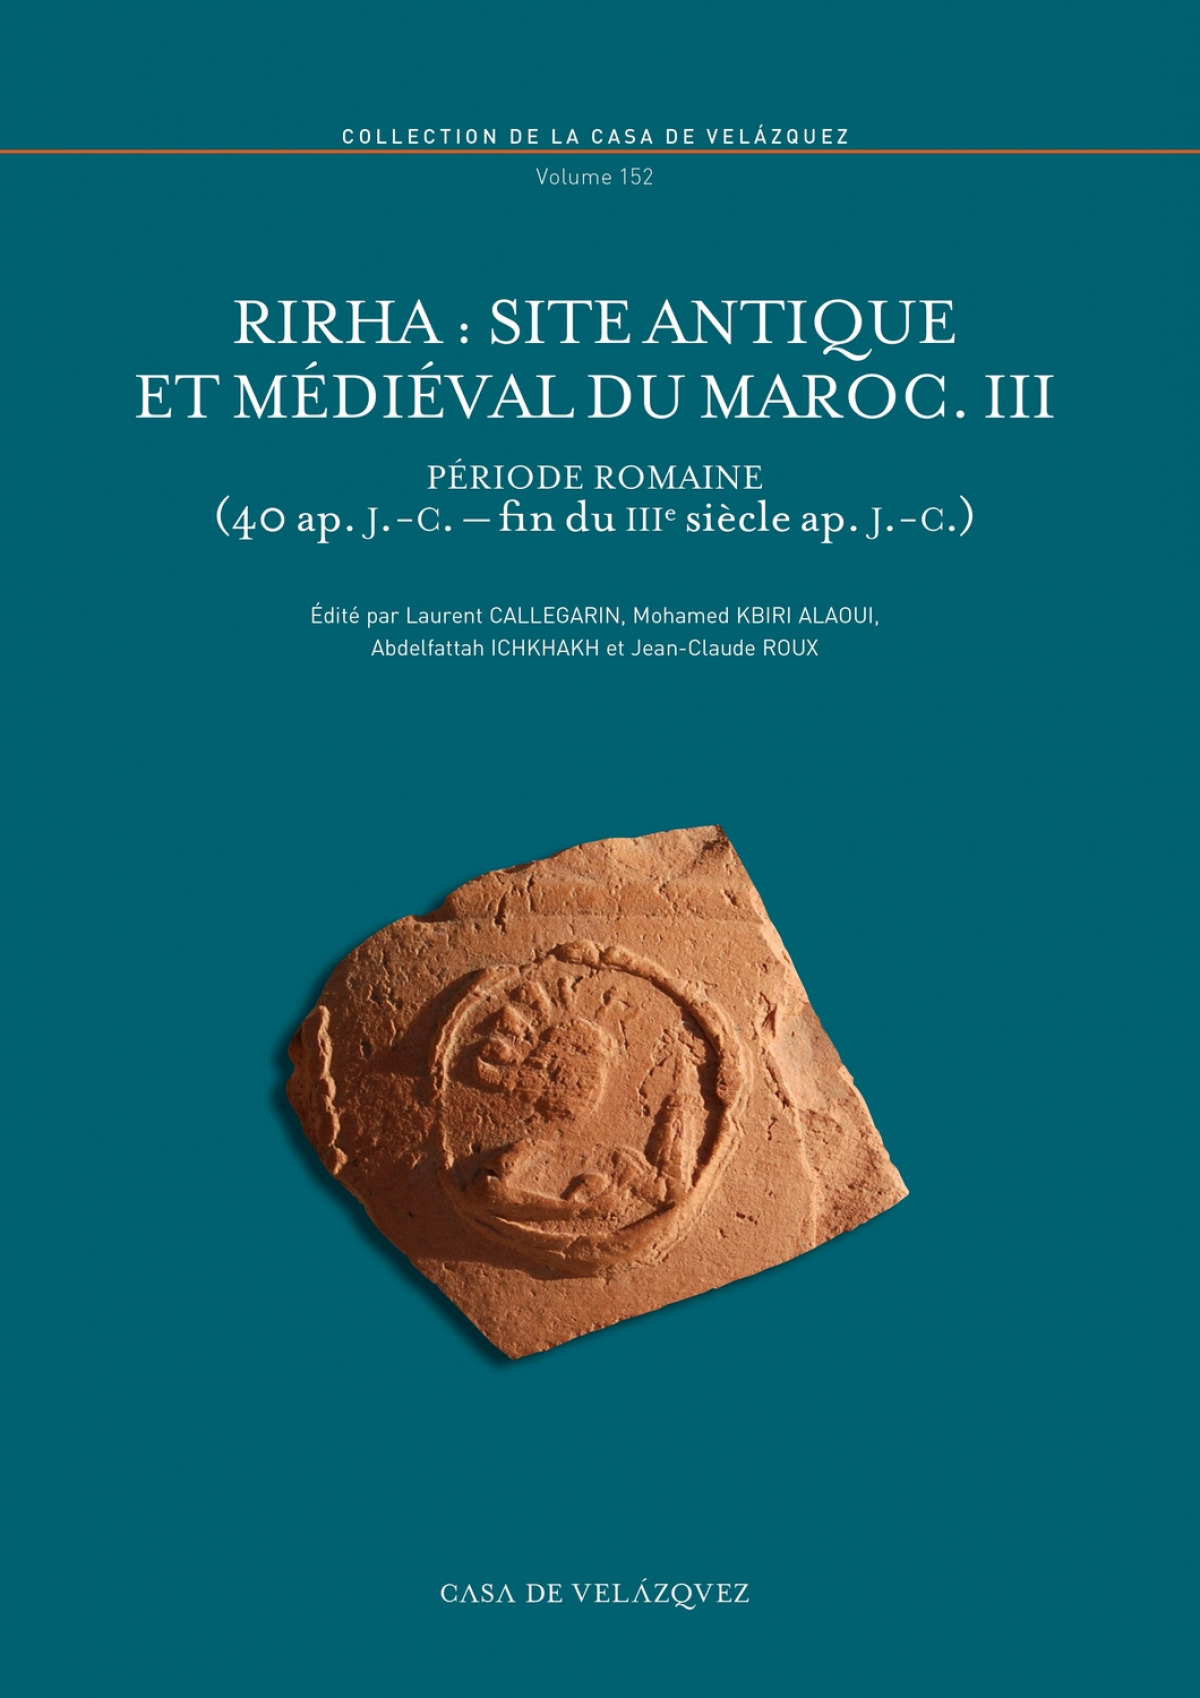 Rirha site antique ed medieval du maroc iii periode romaine - Callegarin L